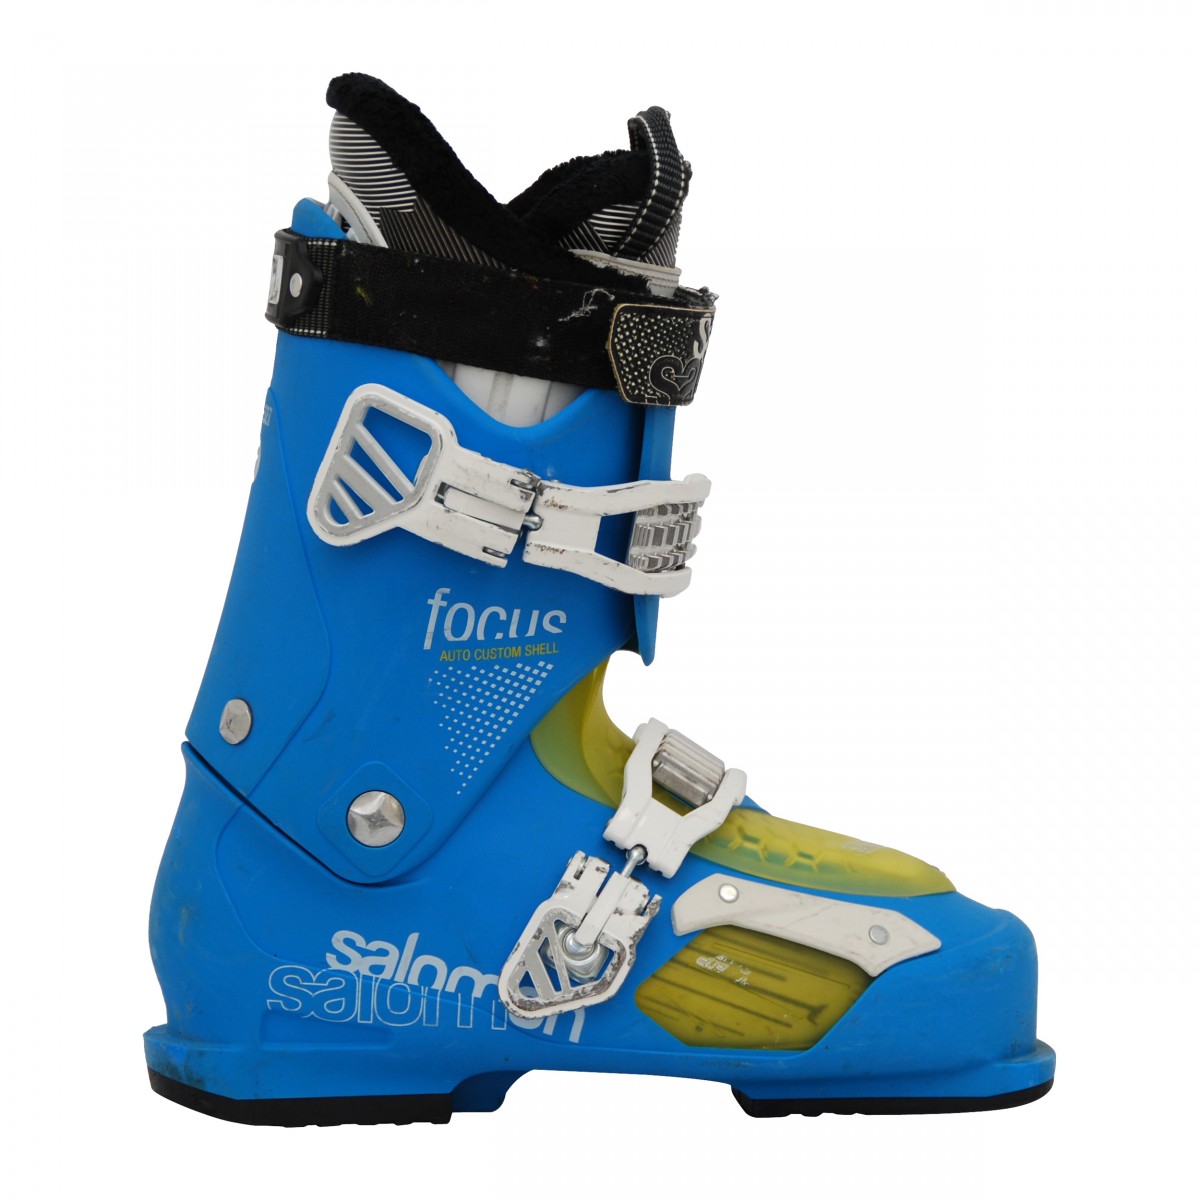 Used ski boot Salomon focus blue